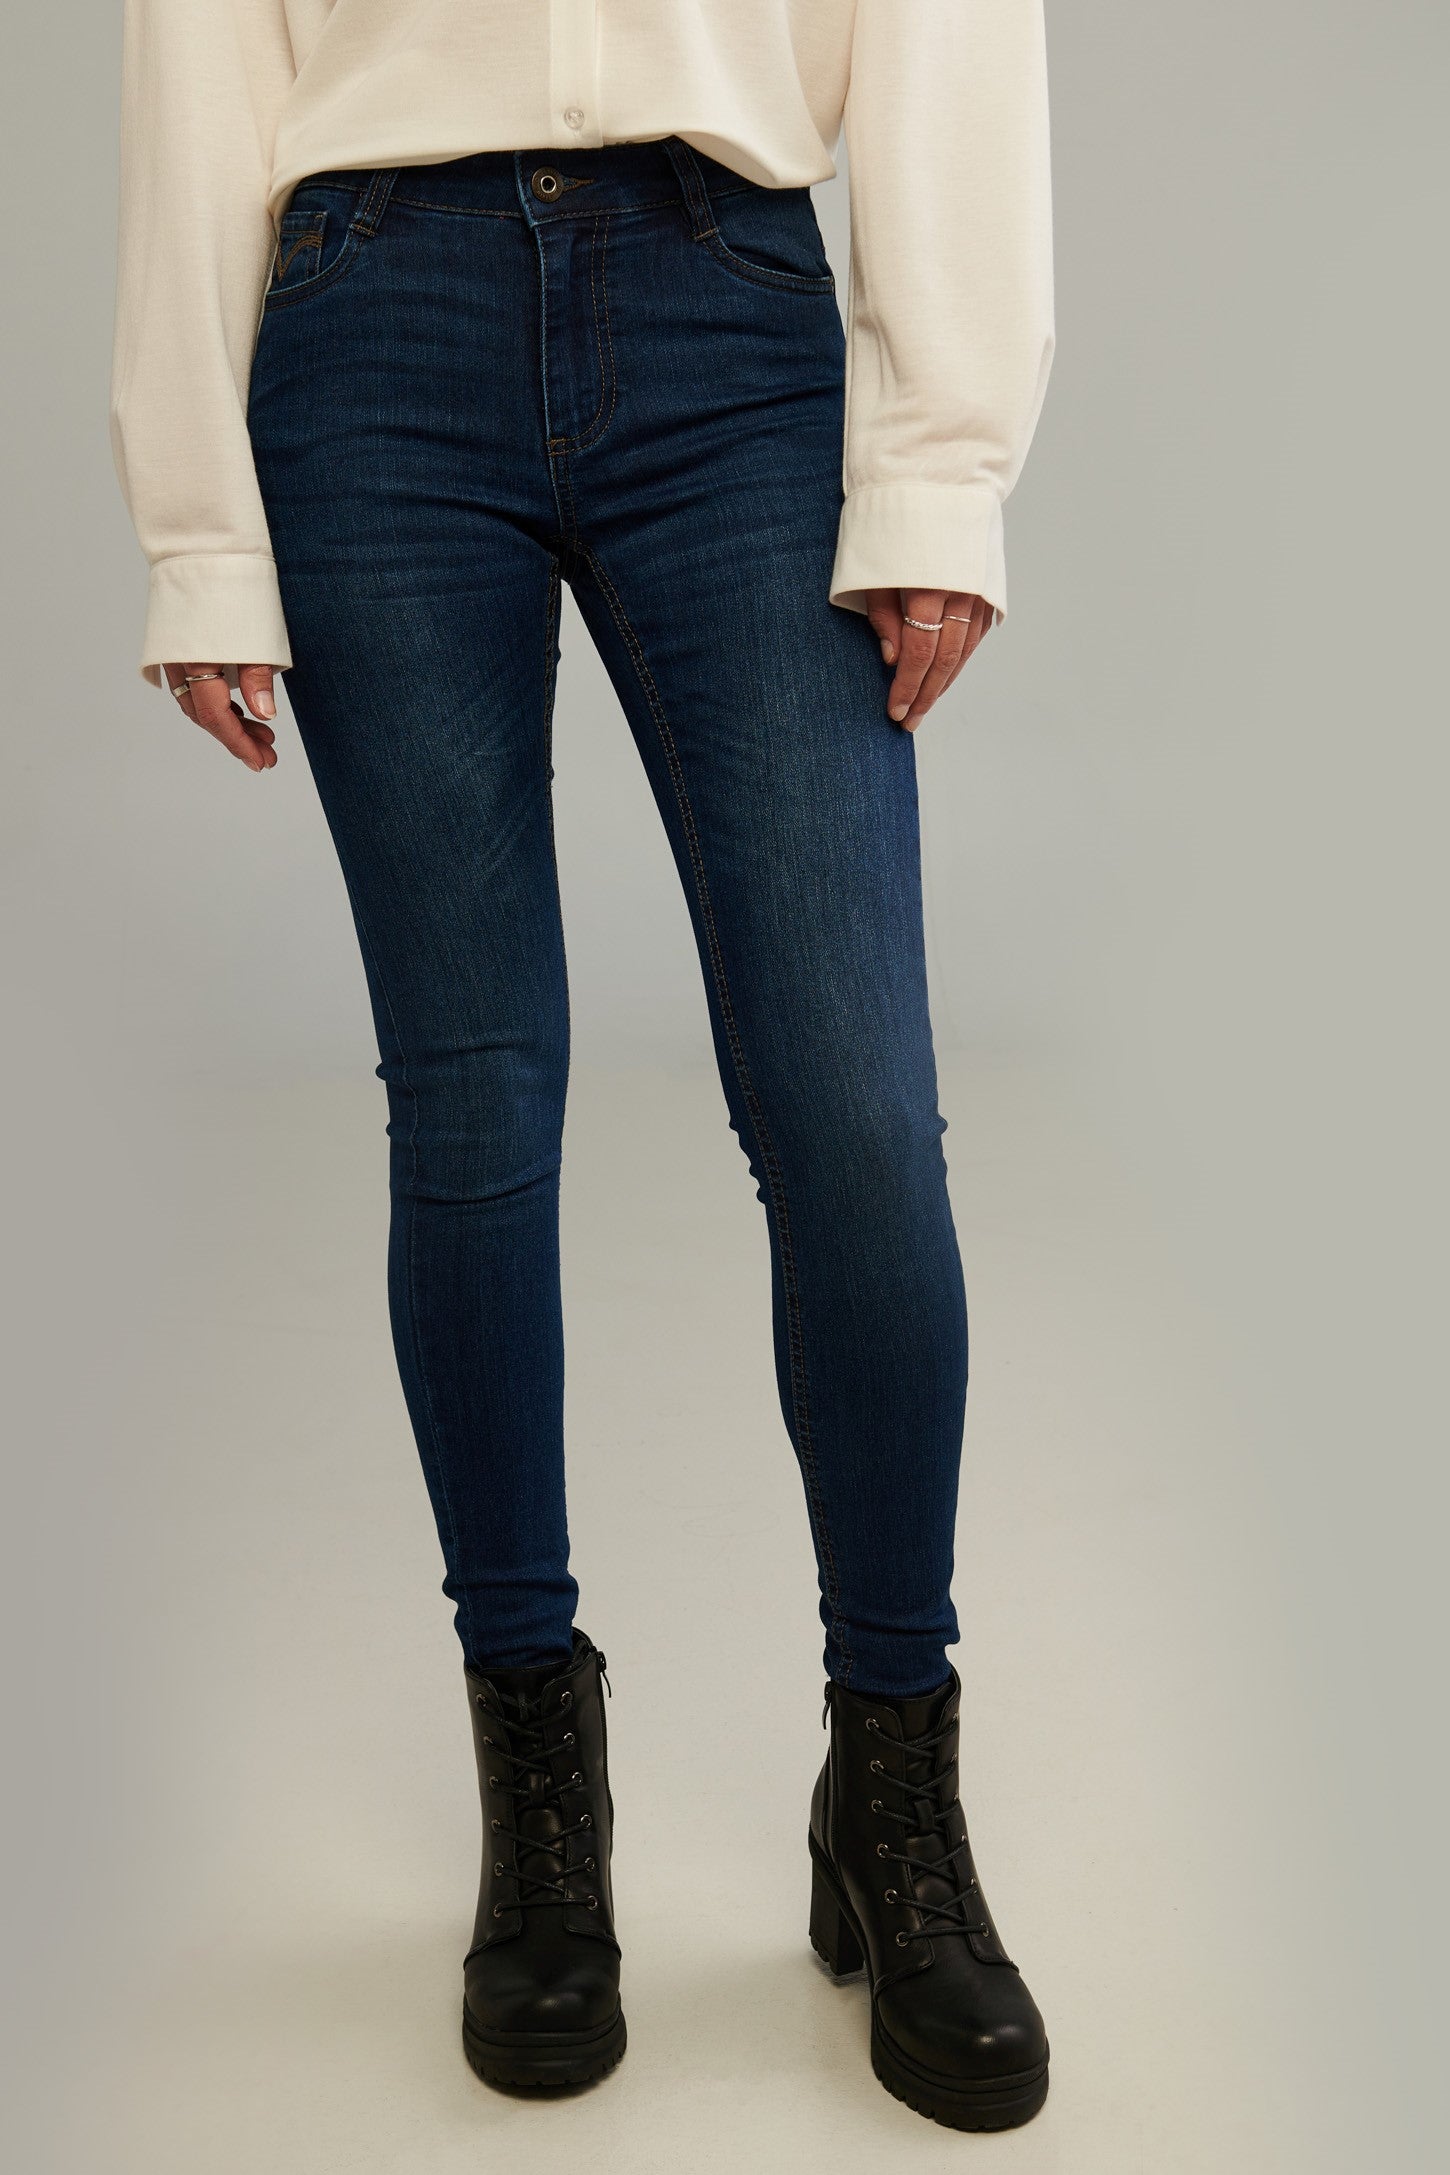 Jeans taille régulière, coupe ajustée - Femme && DENIM FONCE